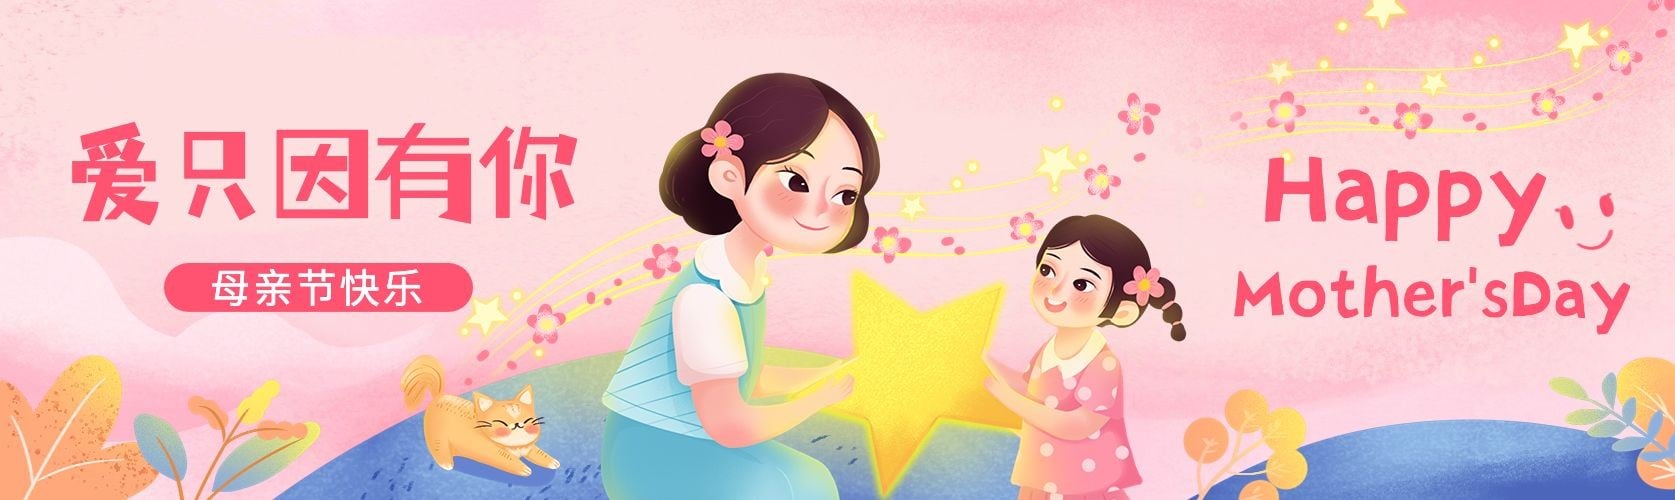 母亲节节日祝福手绘插画公众号首次图预览效果